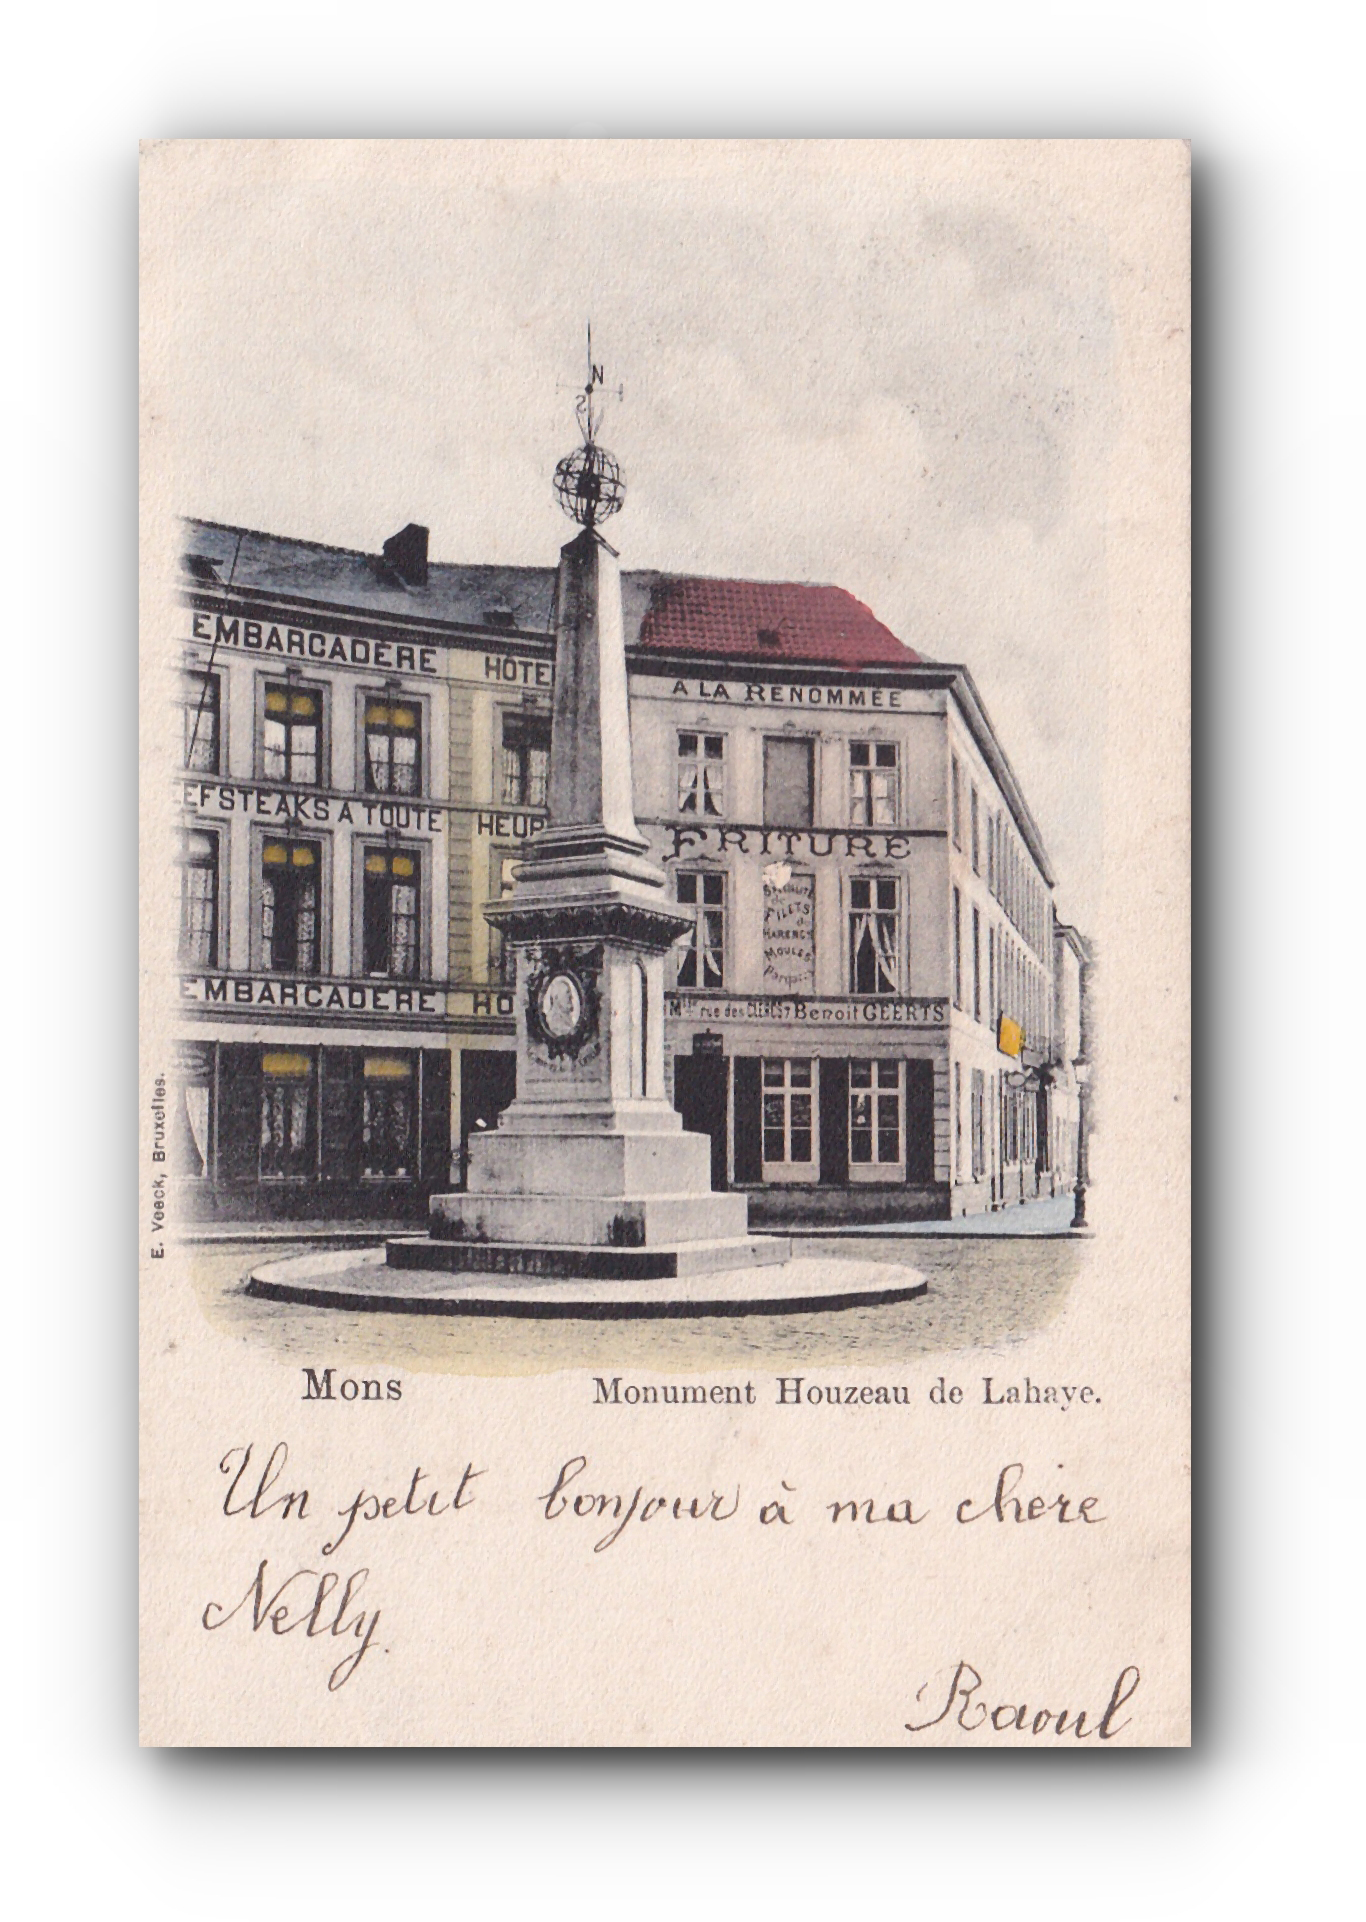 - Monument Houzeau de Lahaye - MONS - 14.08.1901 -